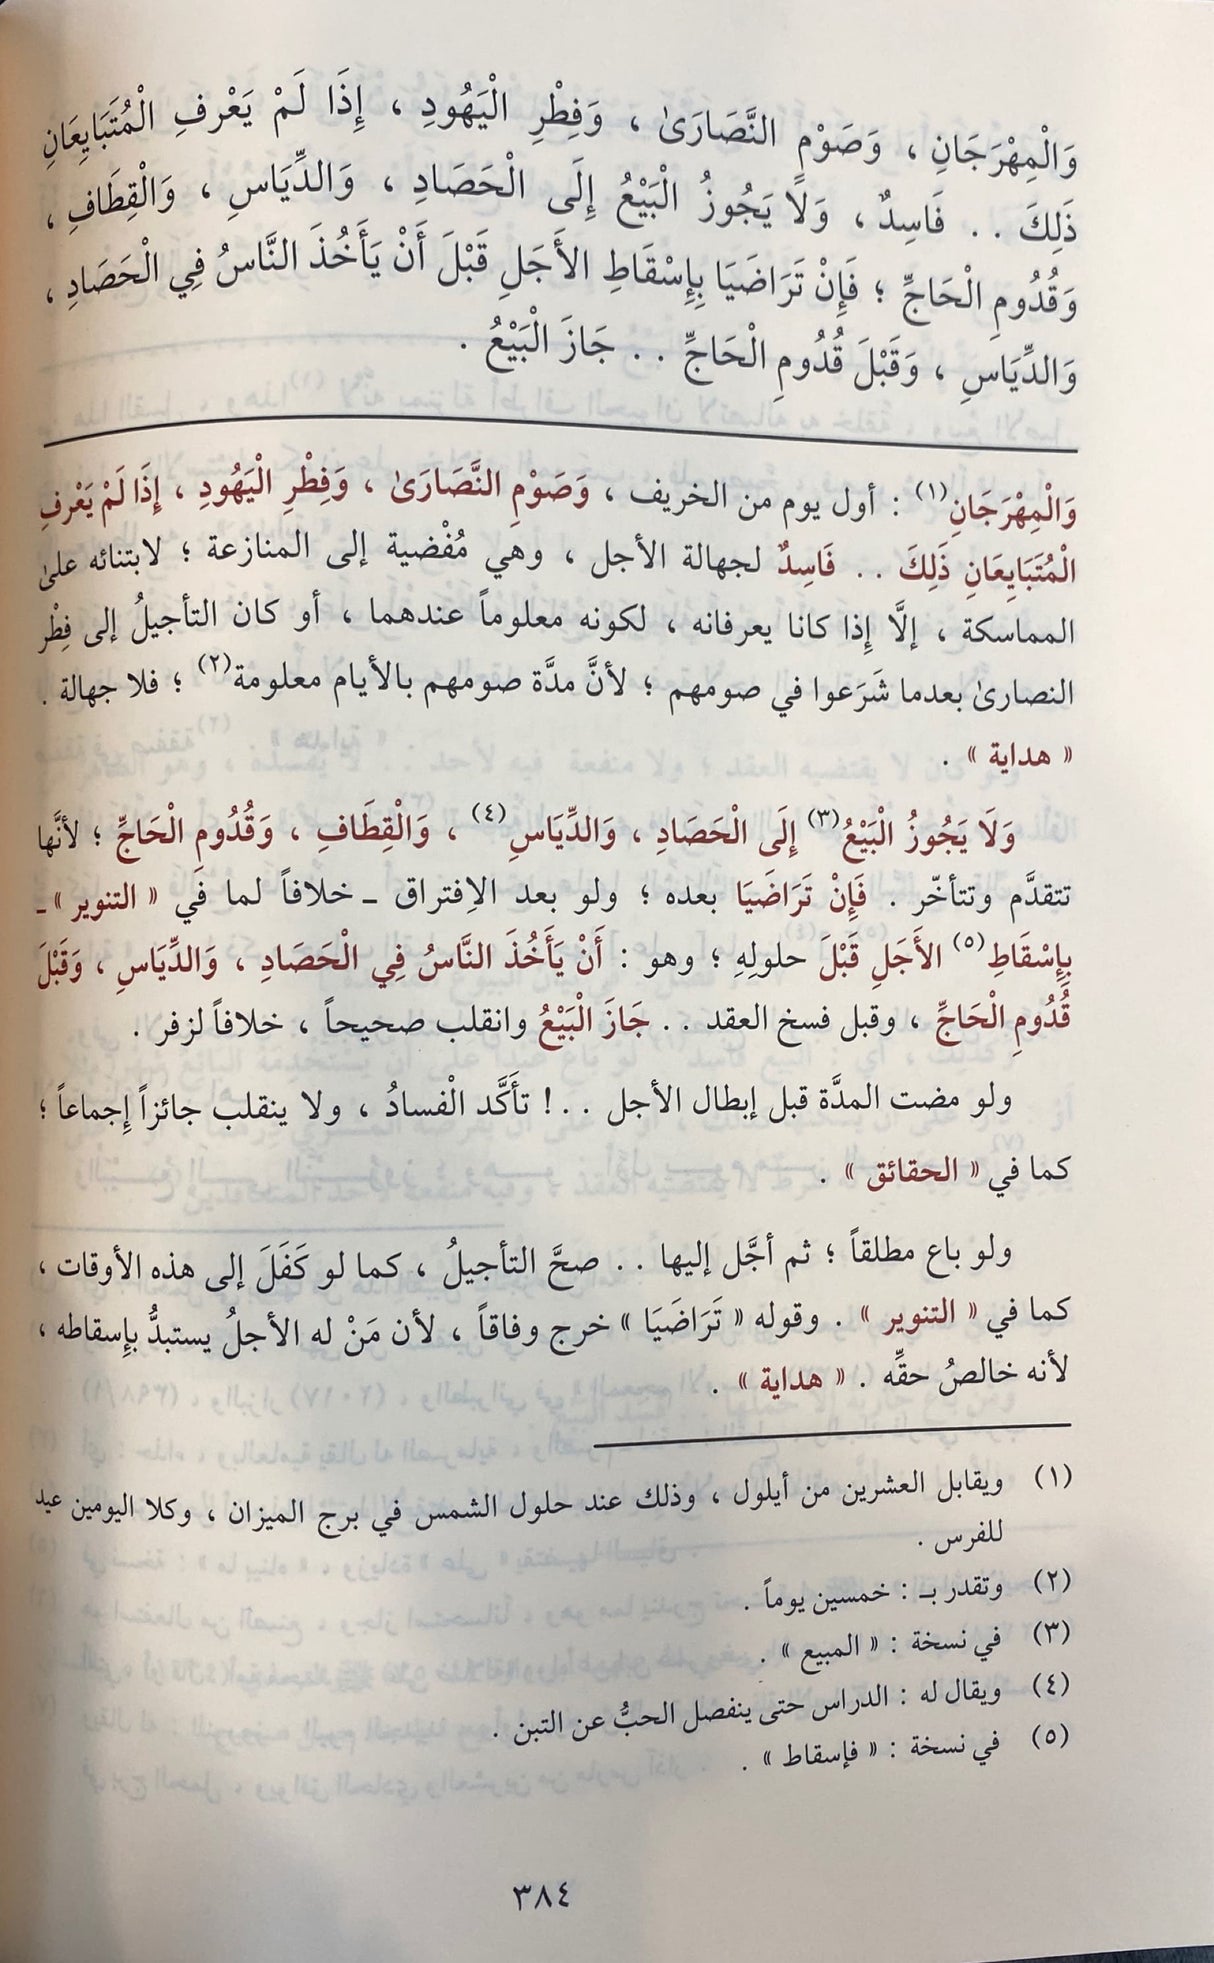 اللباب في شرح الكتاب Al Lubaab Fi Sharhil Kitaab (2 Volume Set)